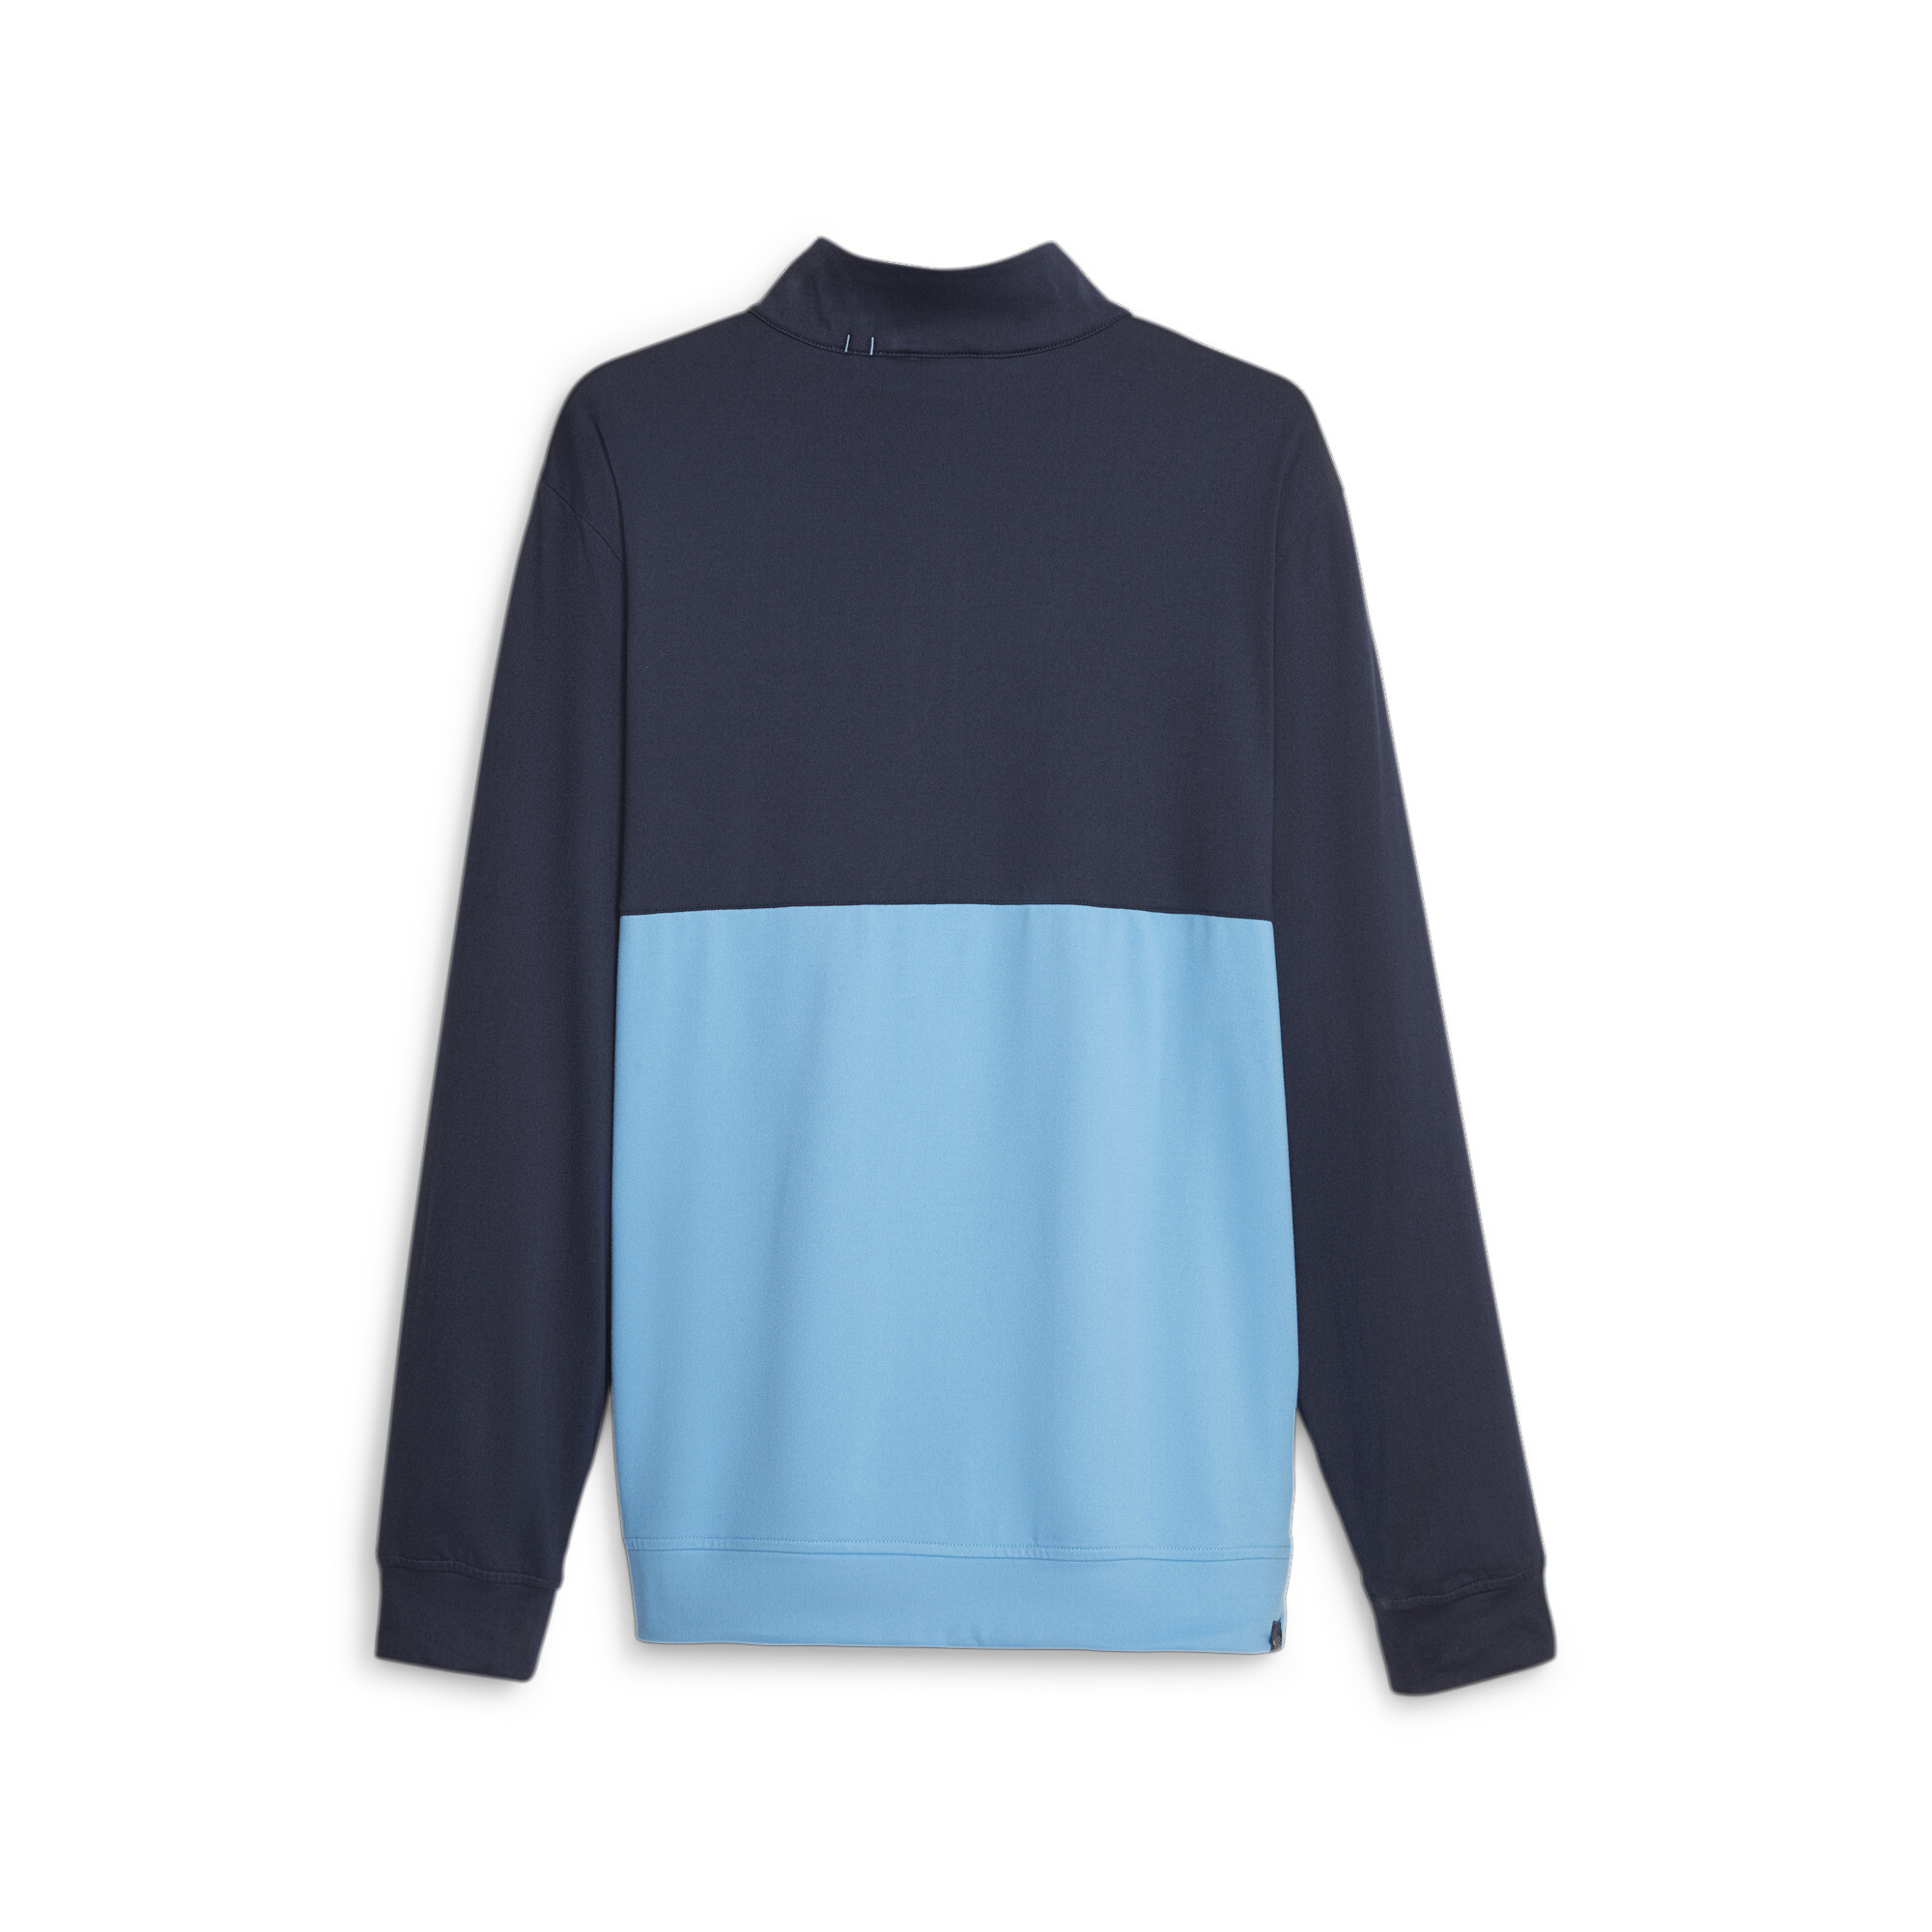 Men's Puma Gamer Colourblock Quarter-Zipâs Golf Pullover Top, Blue, Size 4XL, Clothing